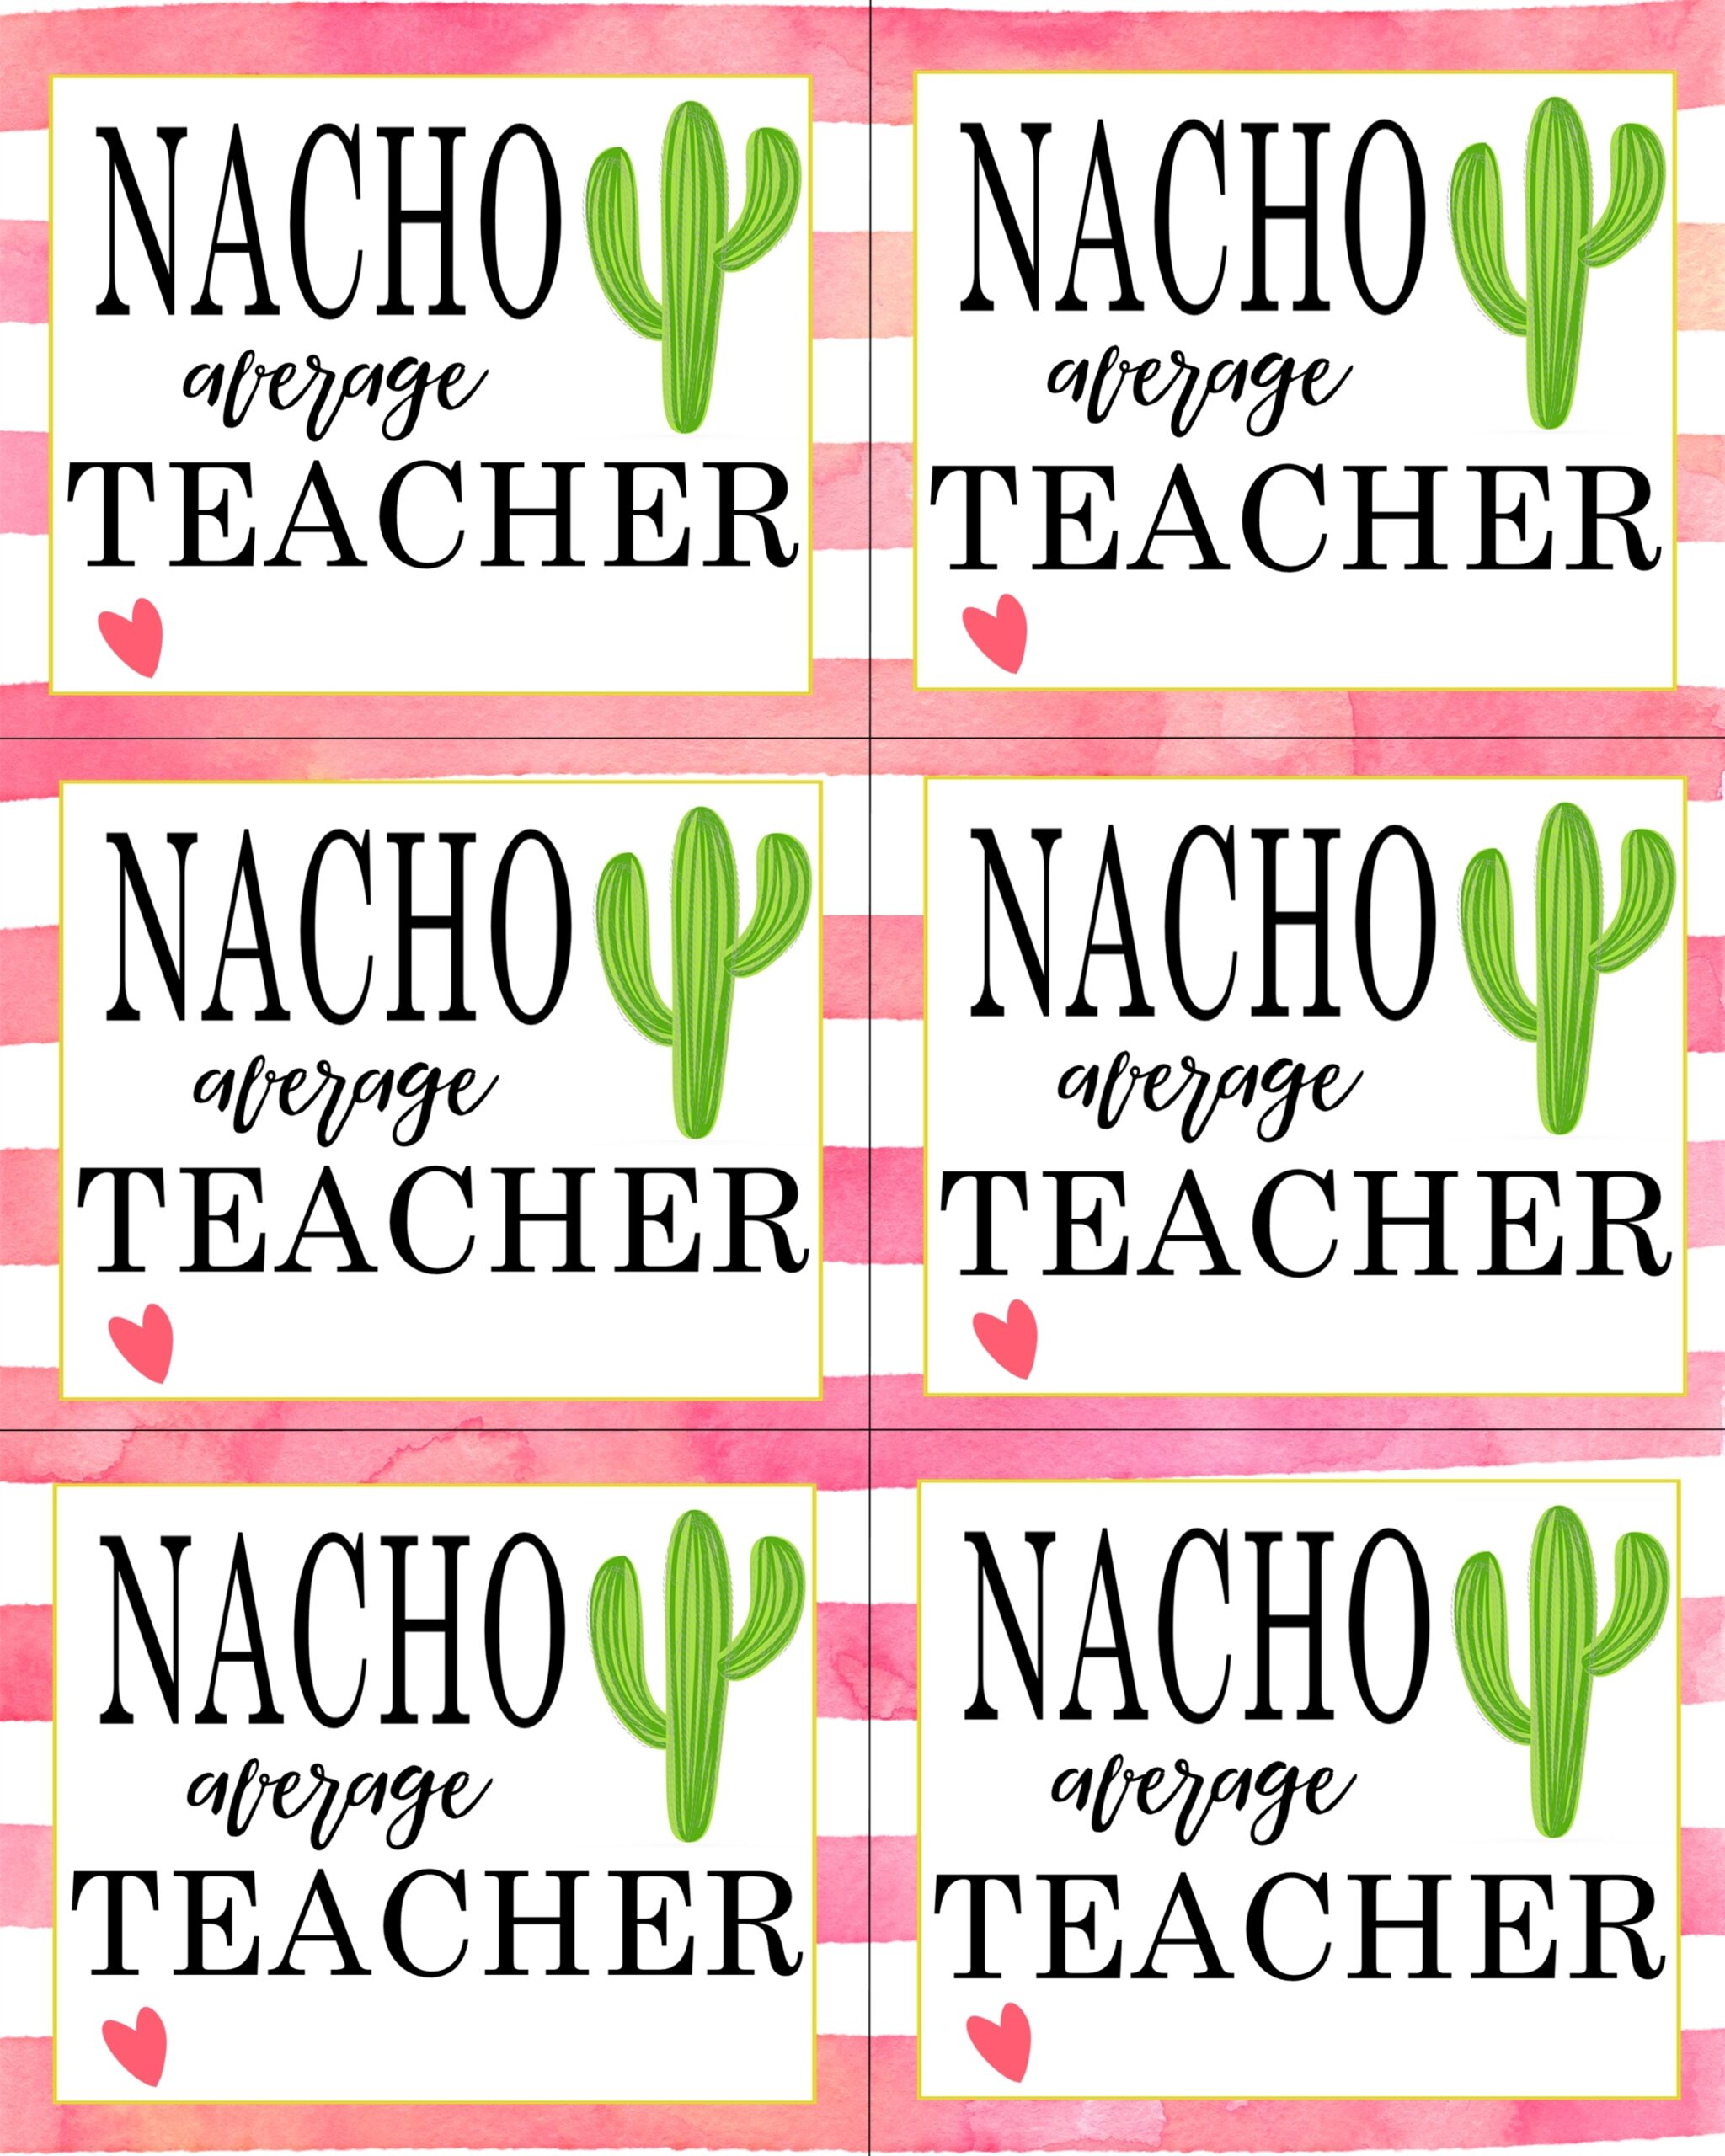 Nacho Average Teacher Free Printable